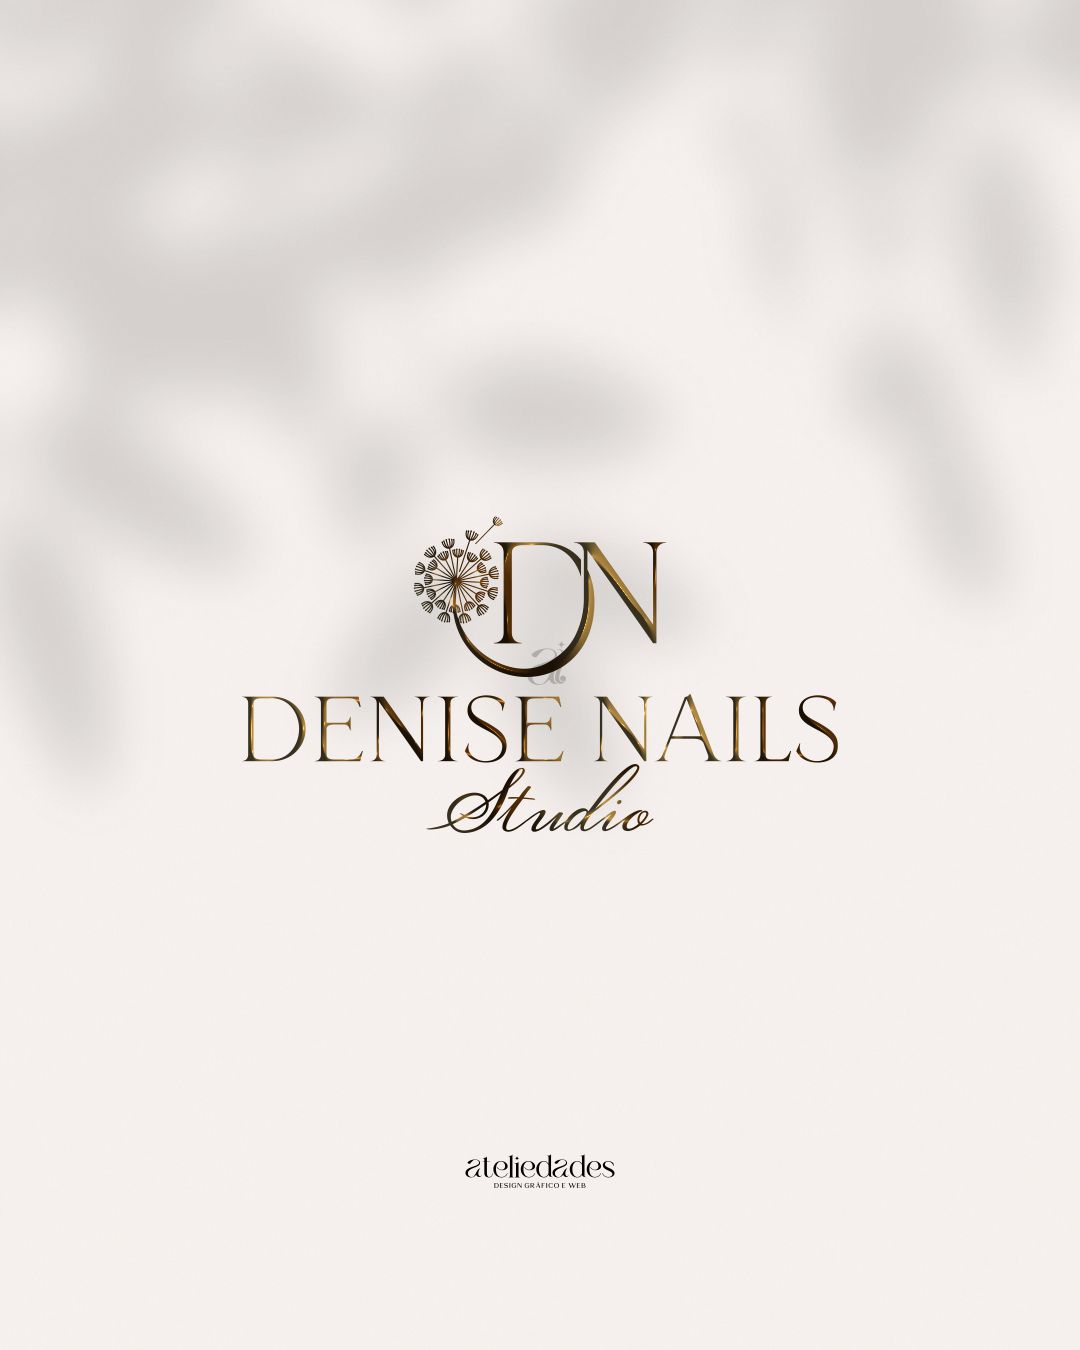 criação de logotipo nail designer denise nails